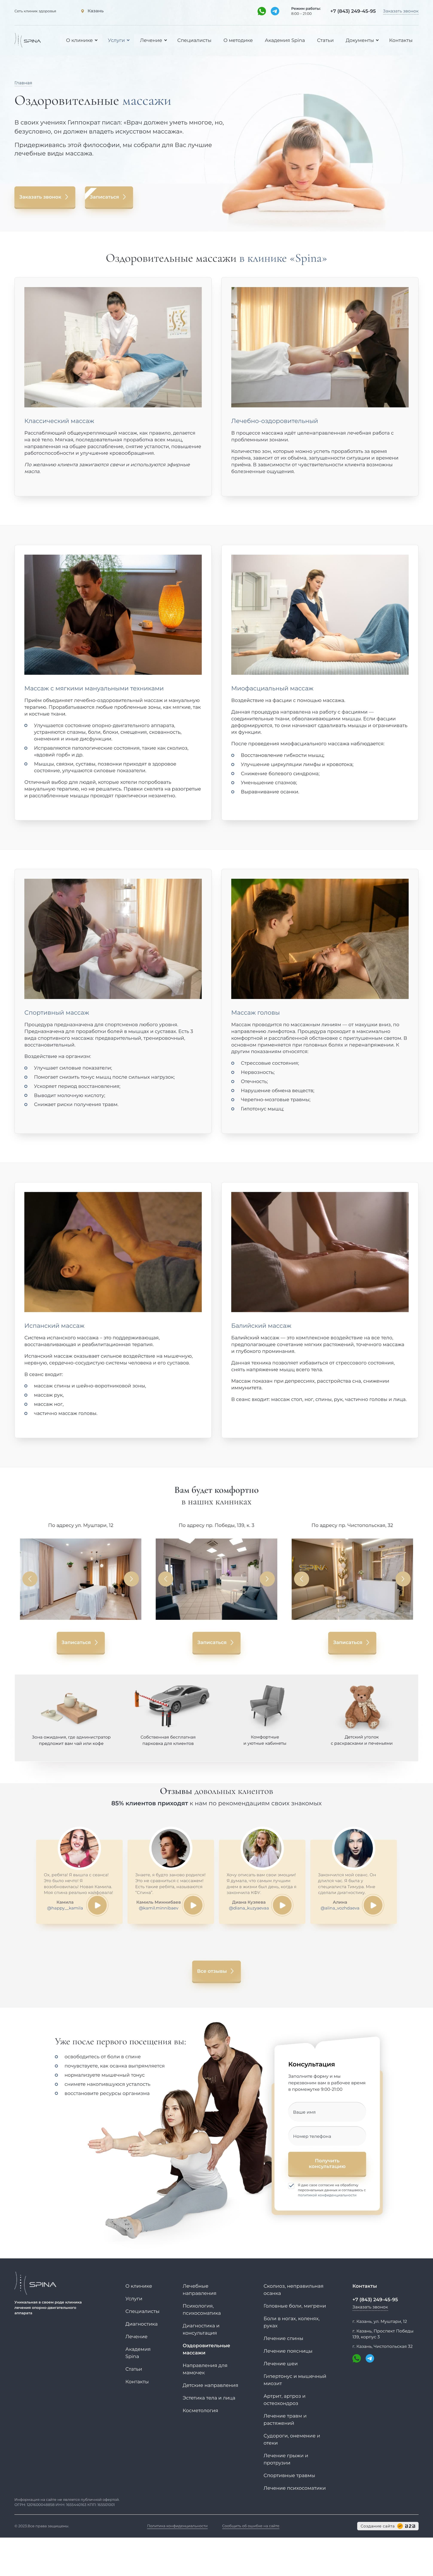 Пример посадочной страницы сайта для оздоровительного массажа